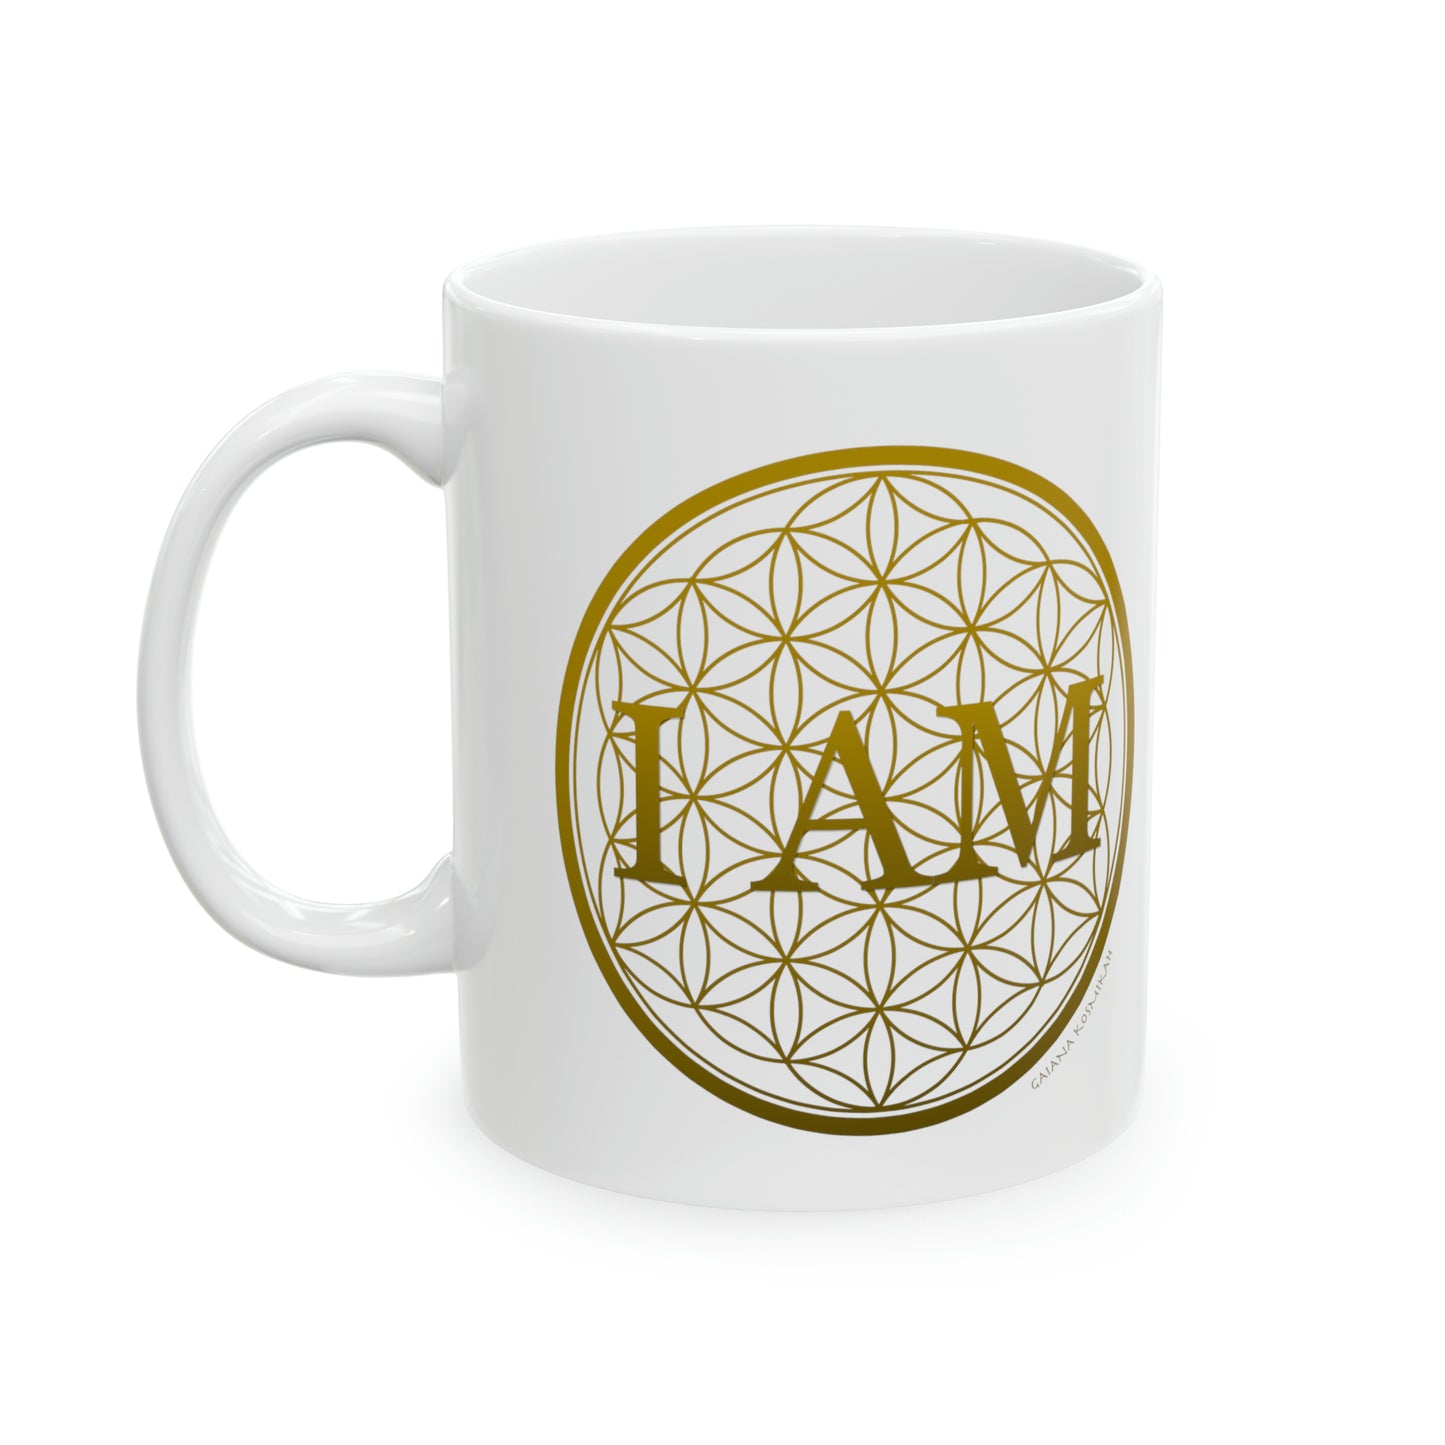 I Am & Flower of Life - Ceramic Mug 11oz